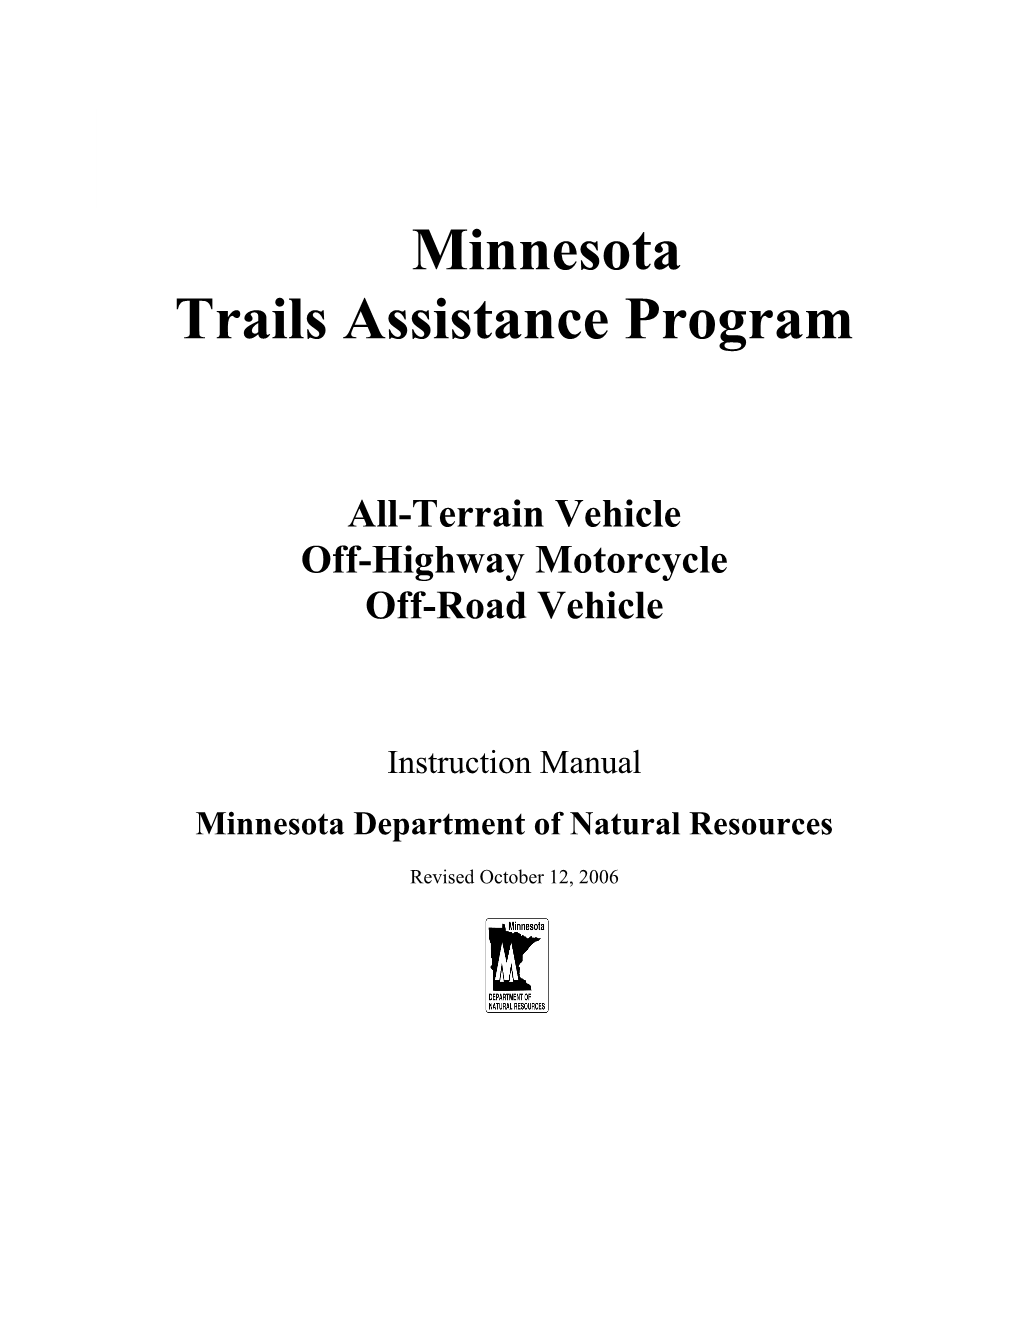 Trails Assistance Program